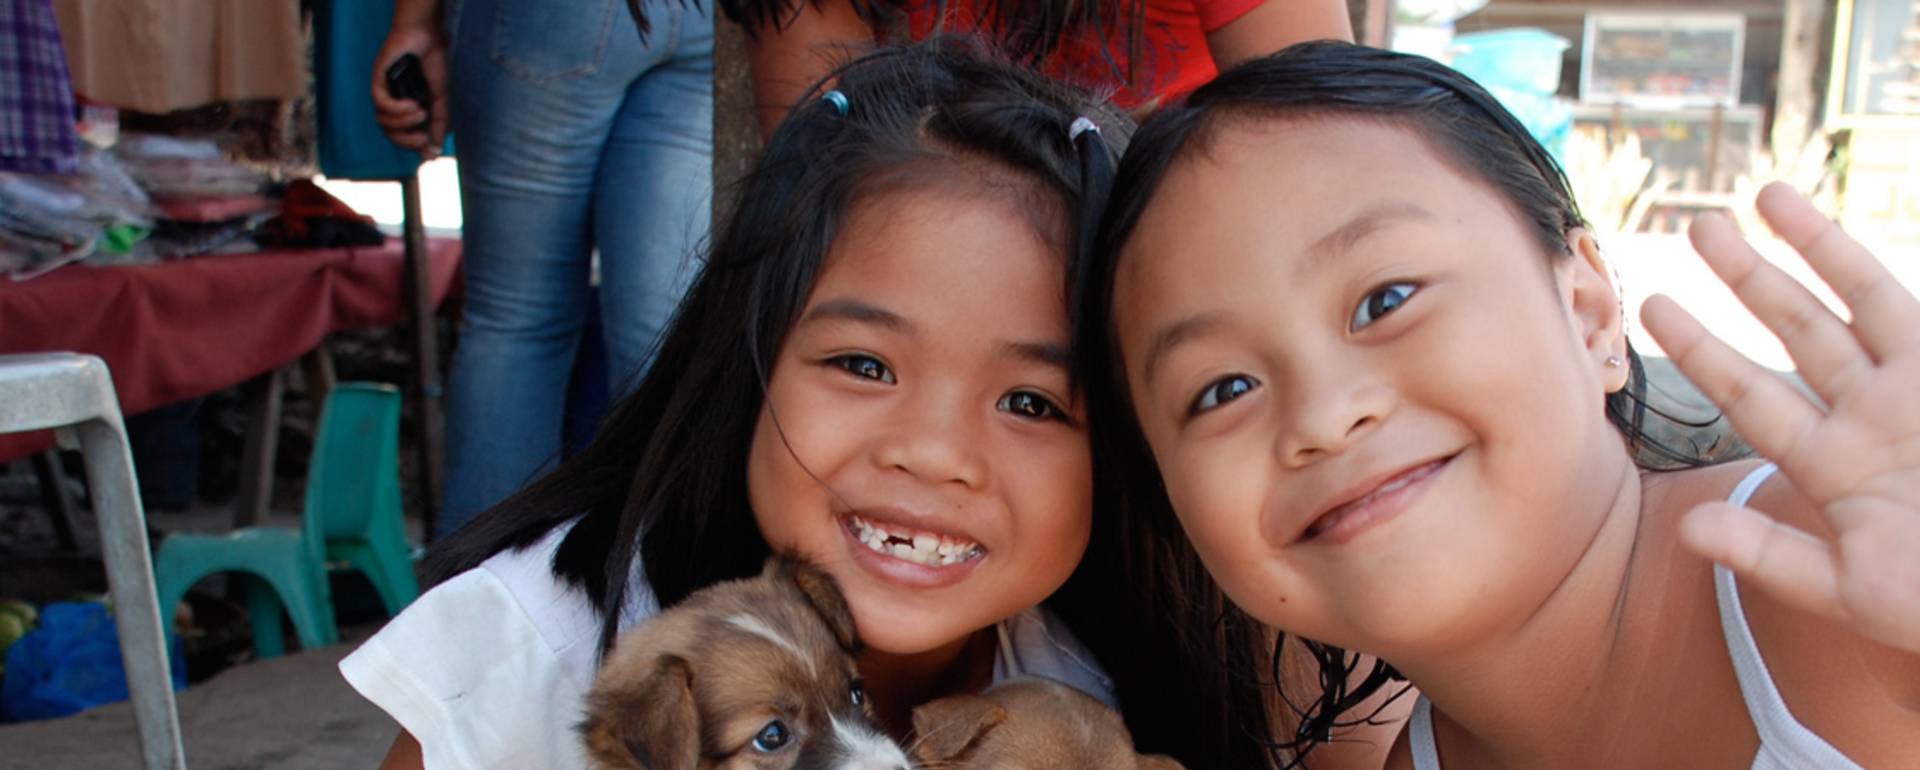 Lachende philippinische Kinder